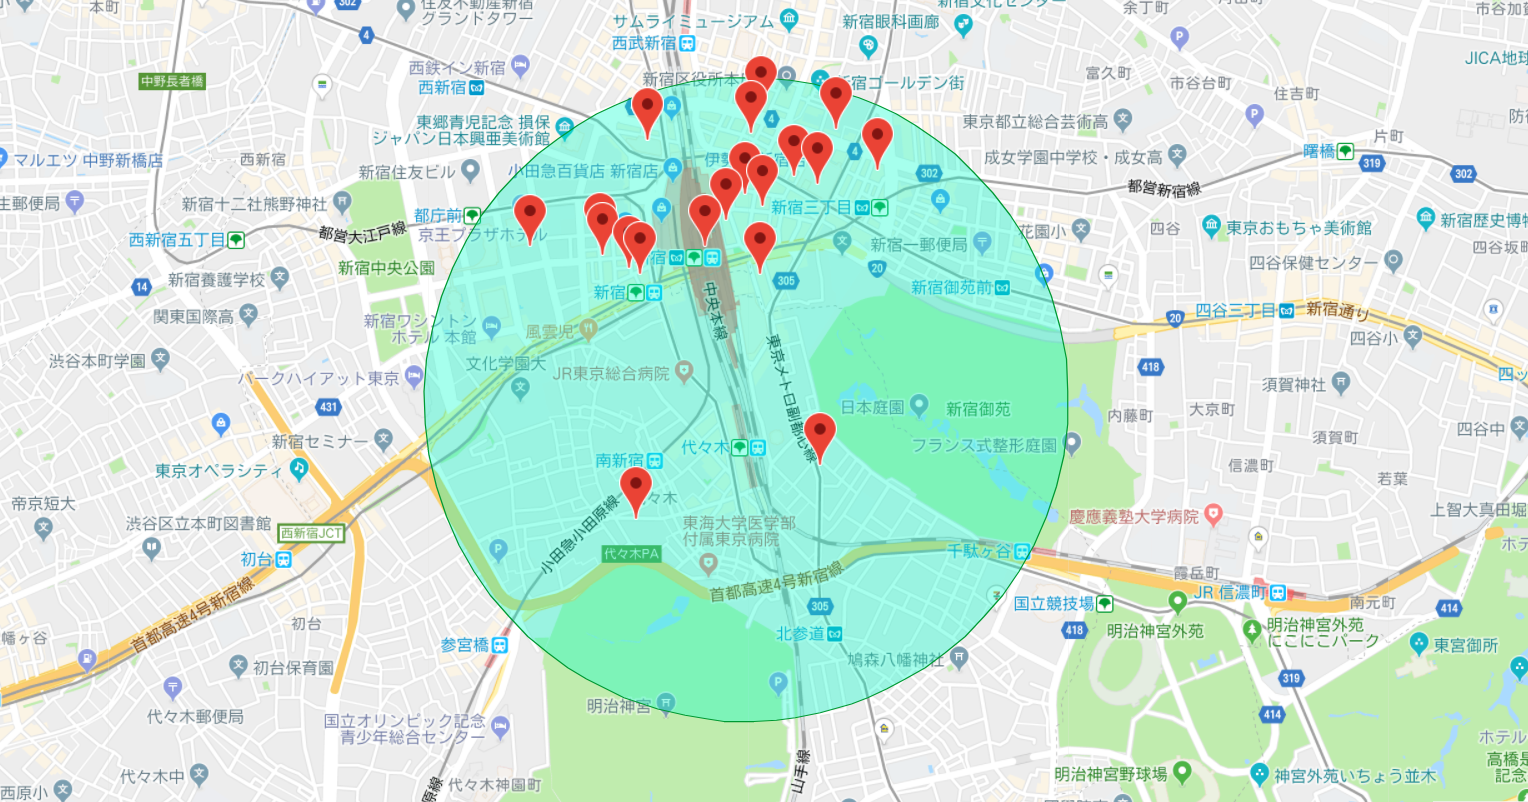 Google Maps Apiで現在地のスポット情報をマーカーで示すサンプル